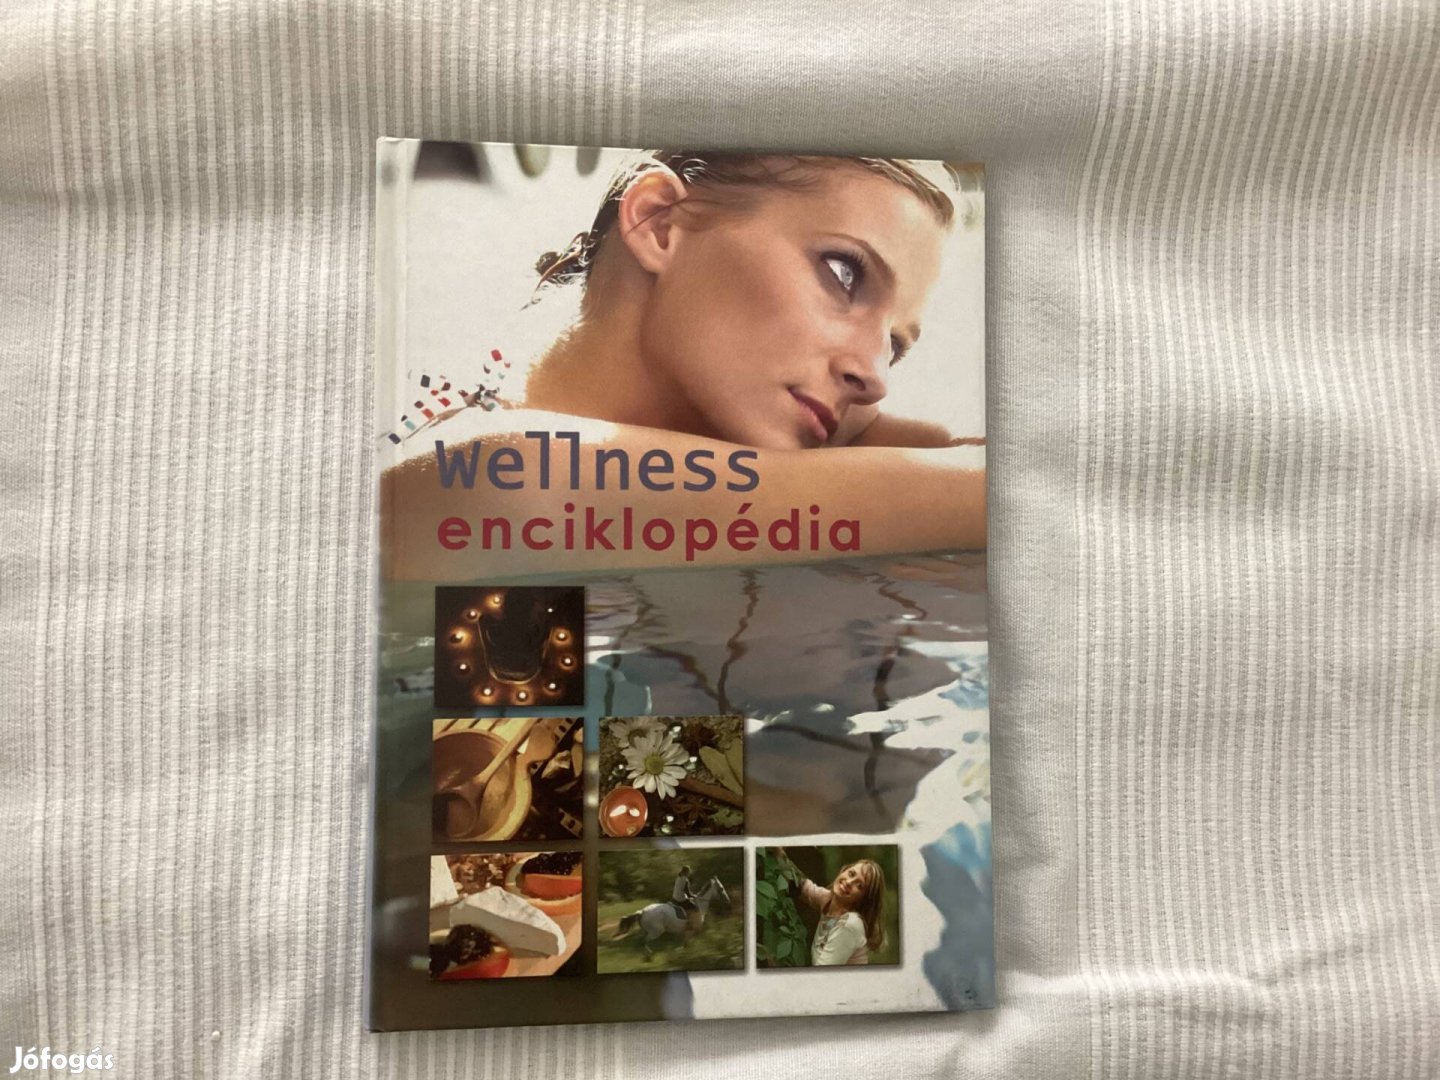 Wellness enciklopédia album